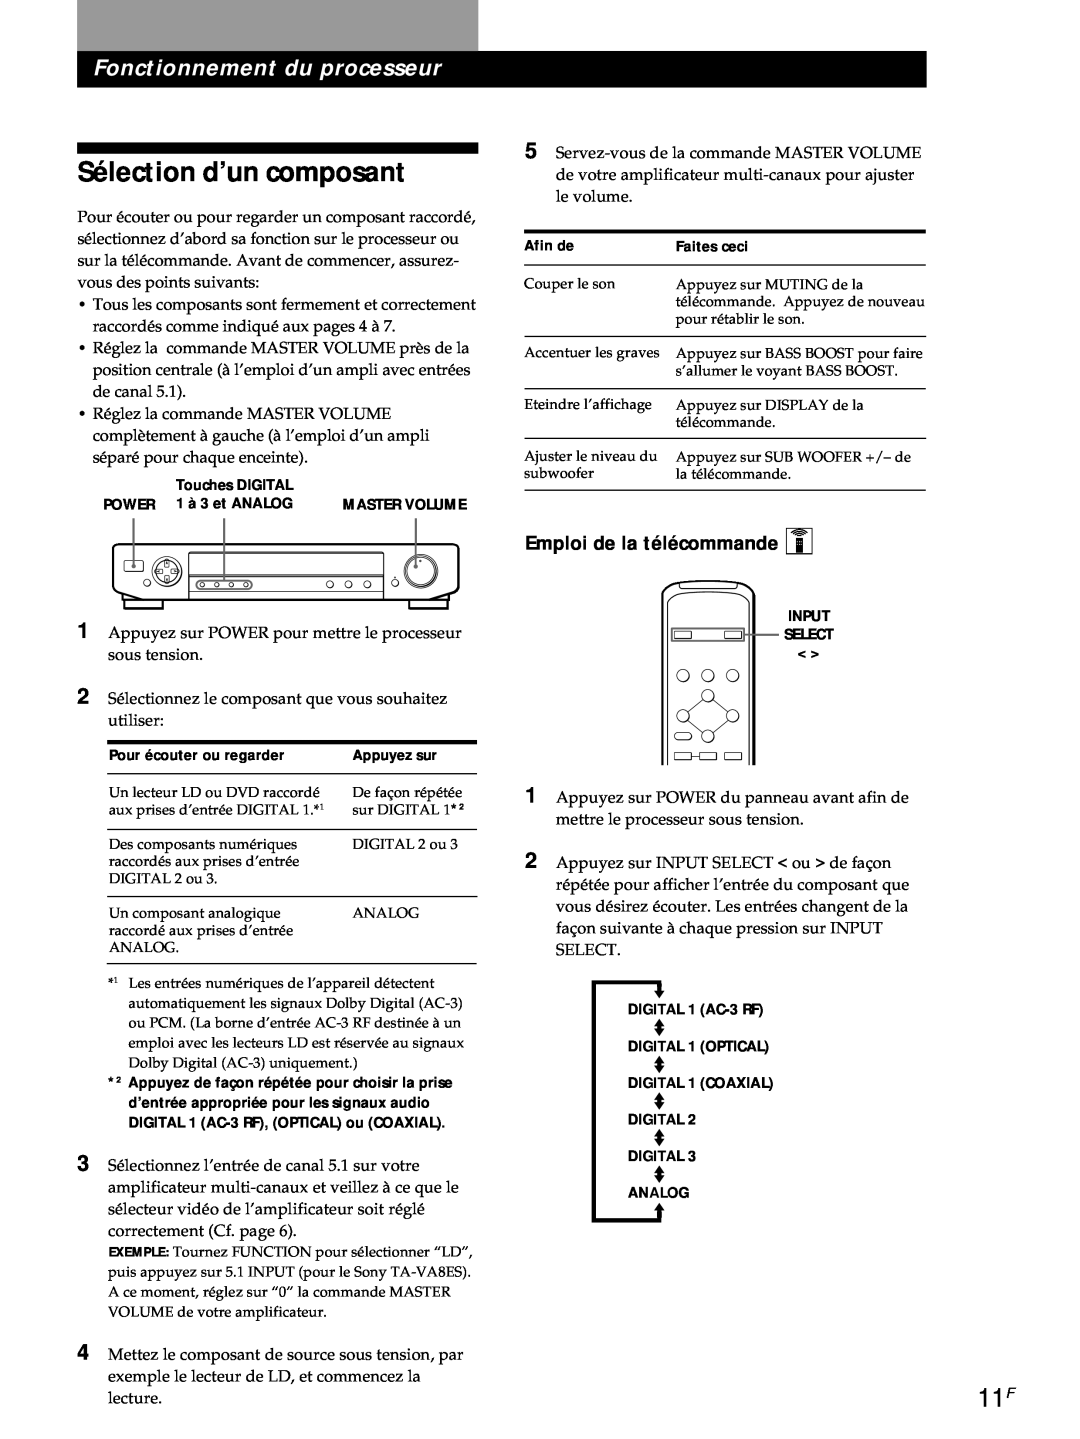 Sony SDP-E800 operating instructions Sélection d’un composant, Fonctionnement du processeur, Emploi de la télécommande Z 